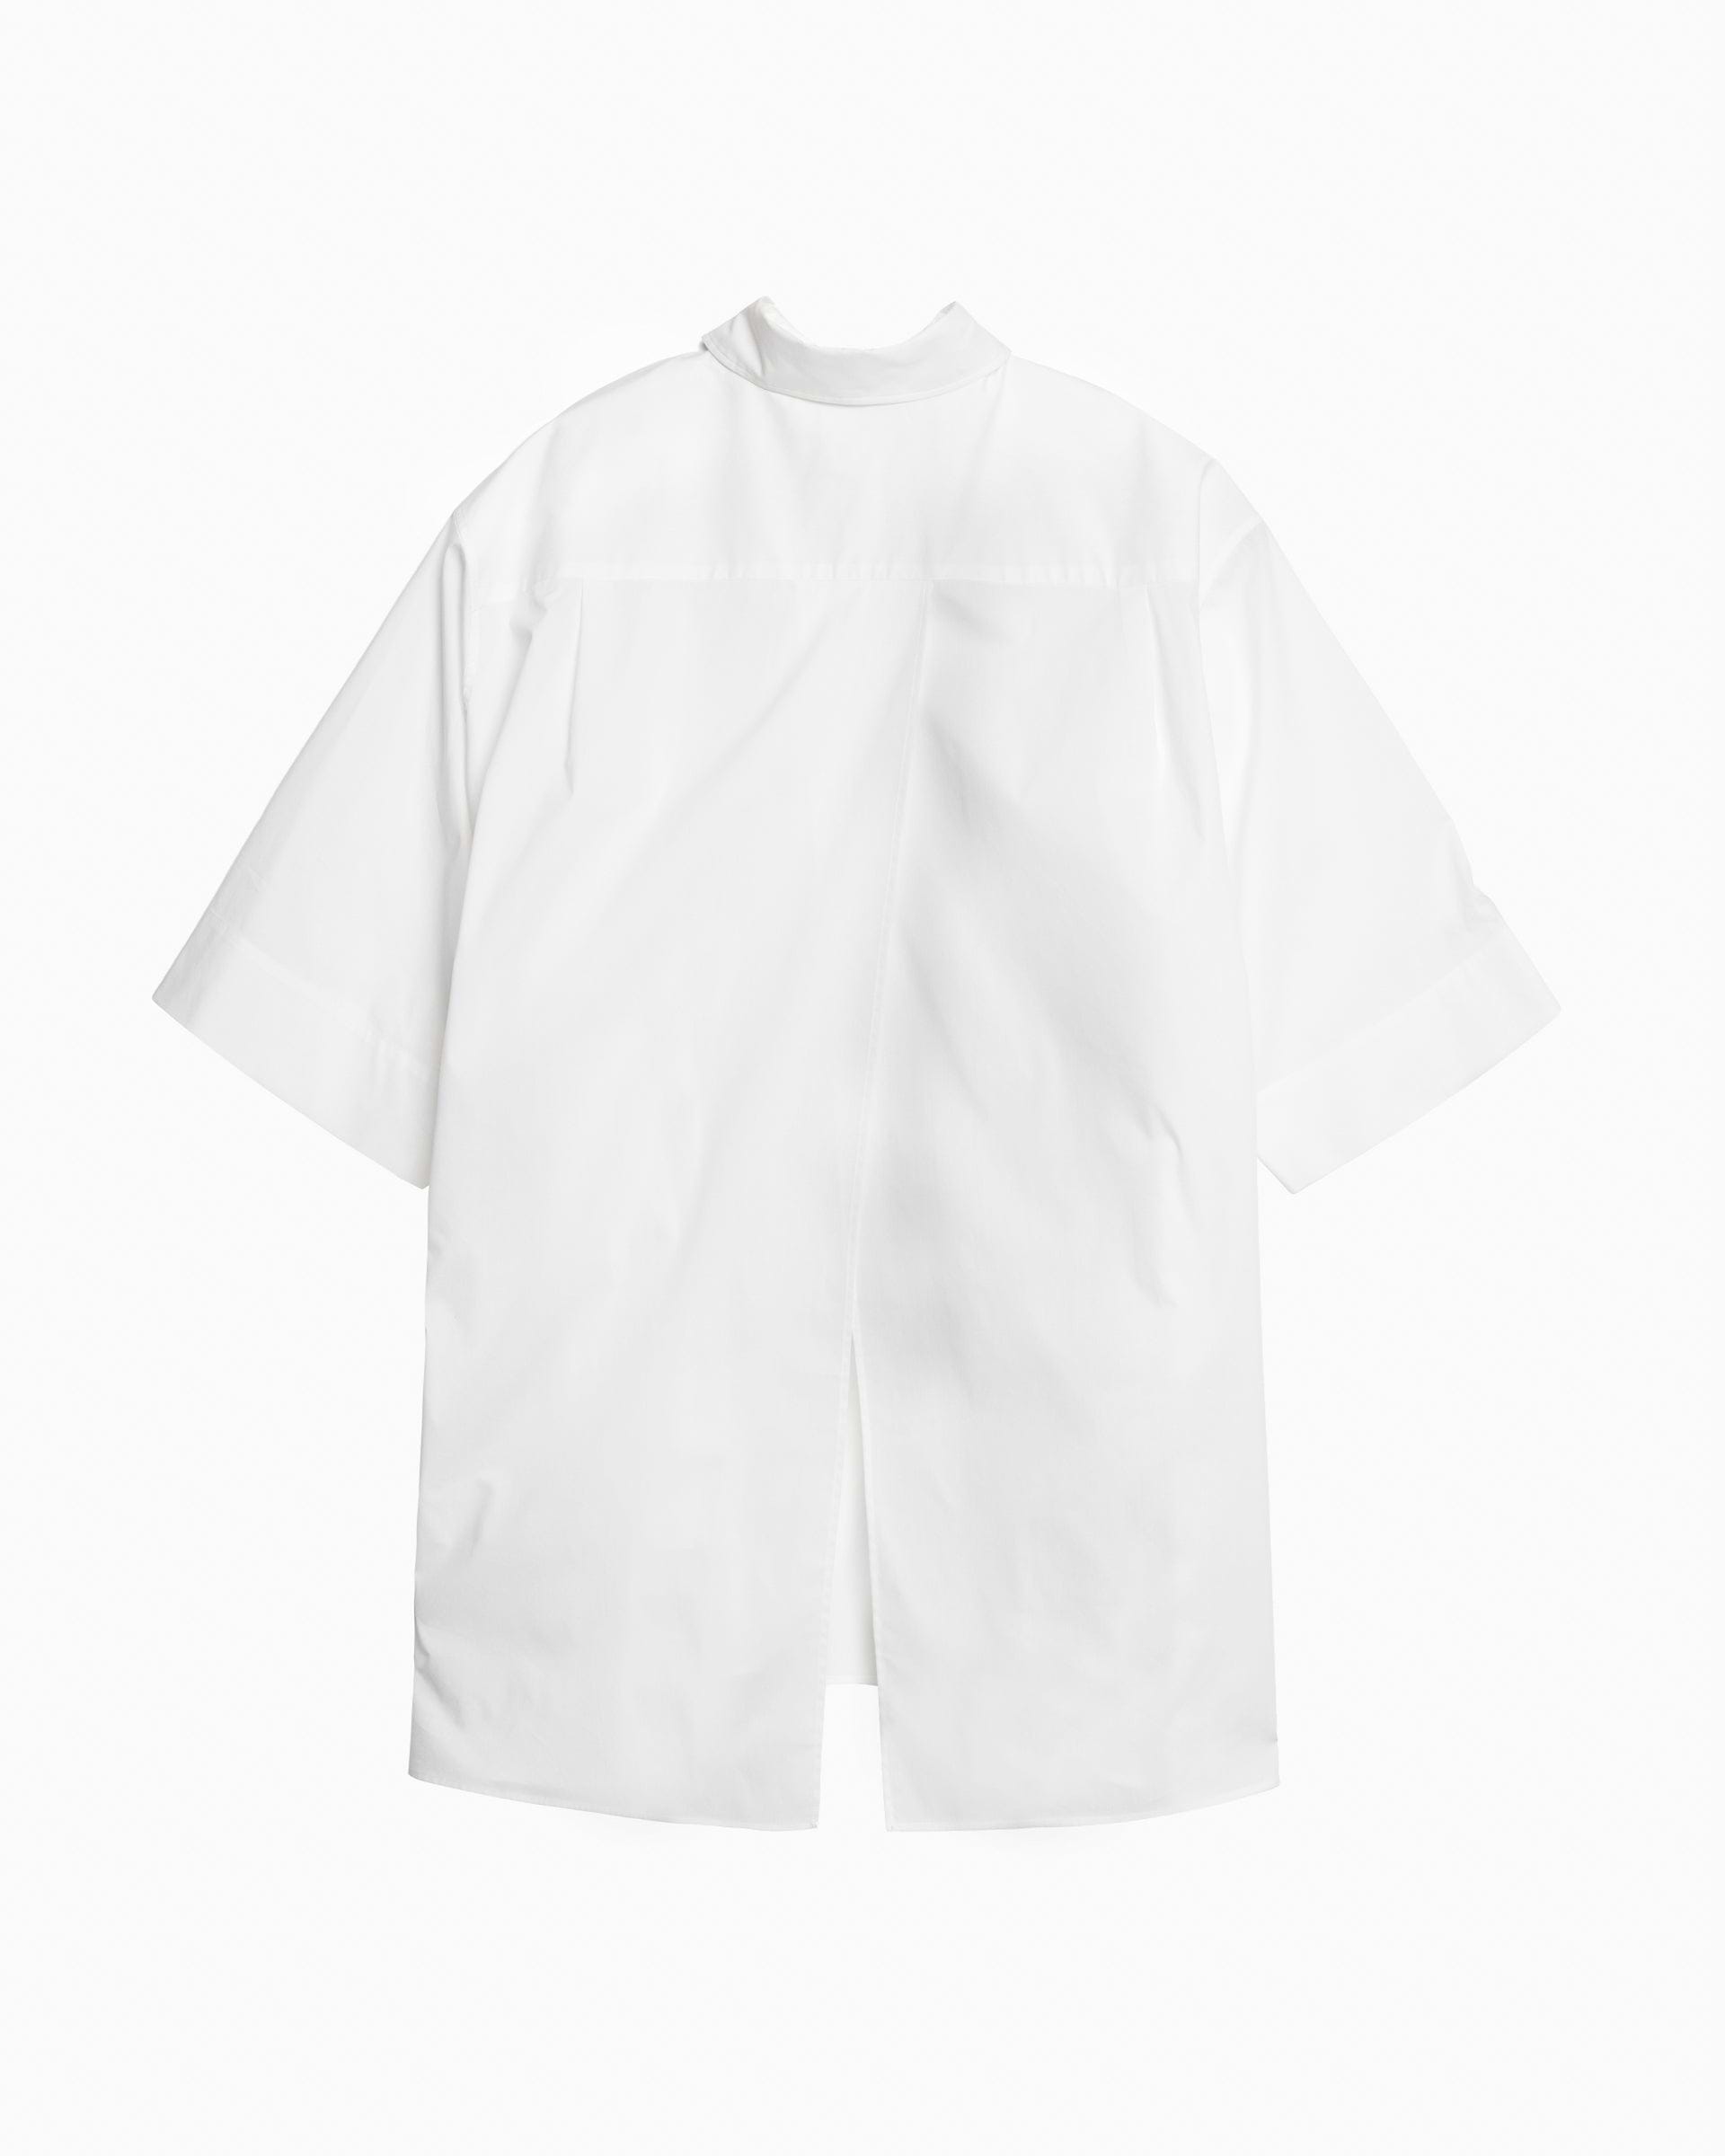 50センチ袖丈th TARO HORIUCHI ティーエイチ  タロウホリウチ VIER Over Shirts オーバー半袖シャツ ホワイト 2101-VSH01-M122